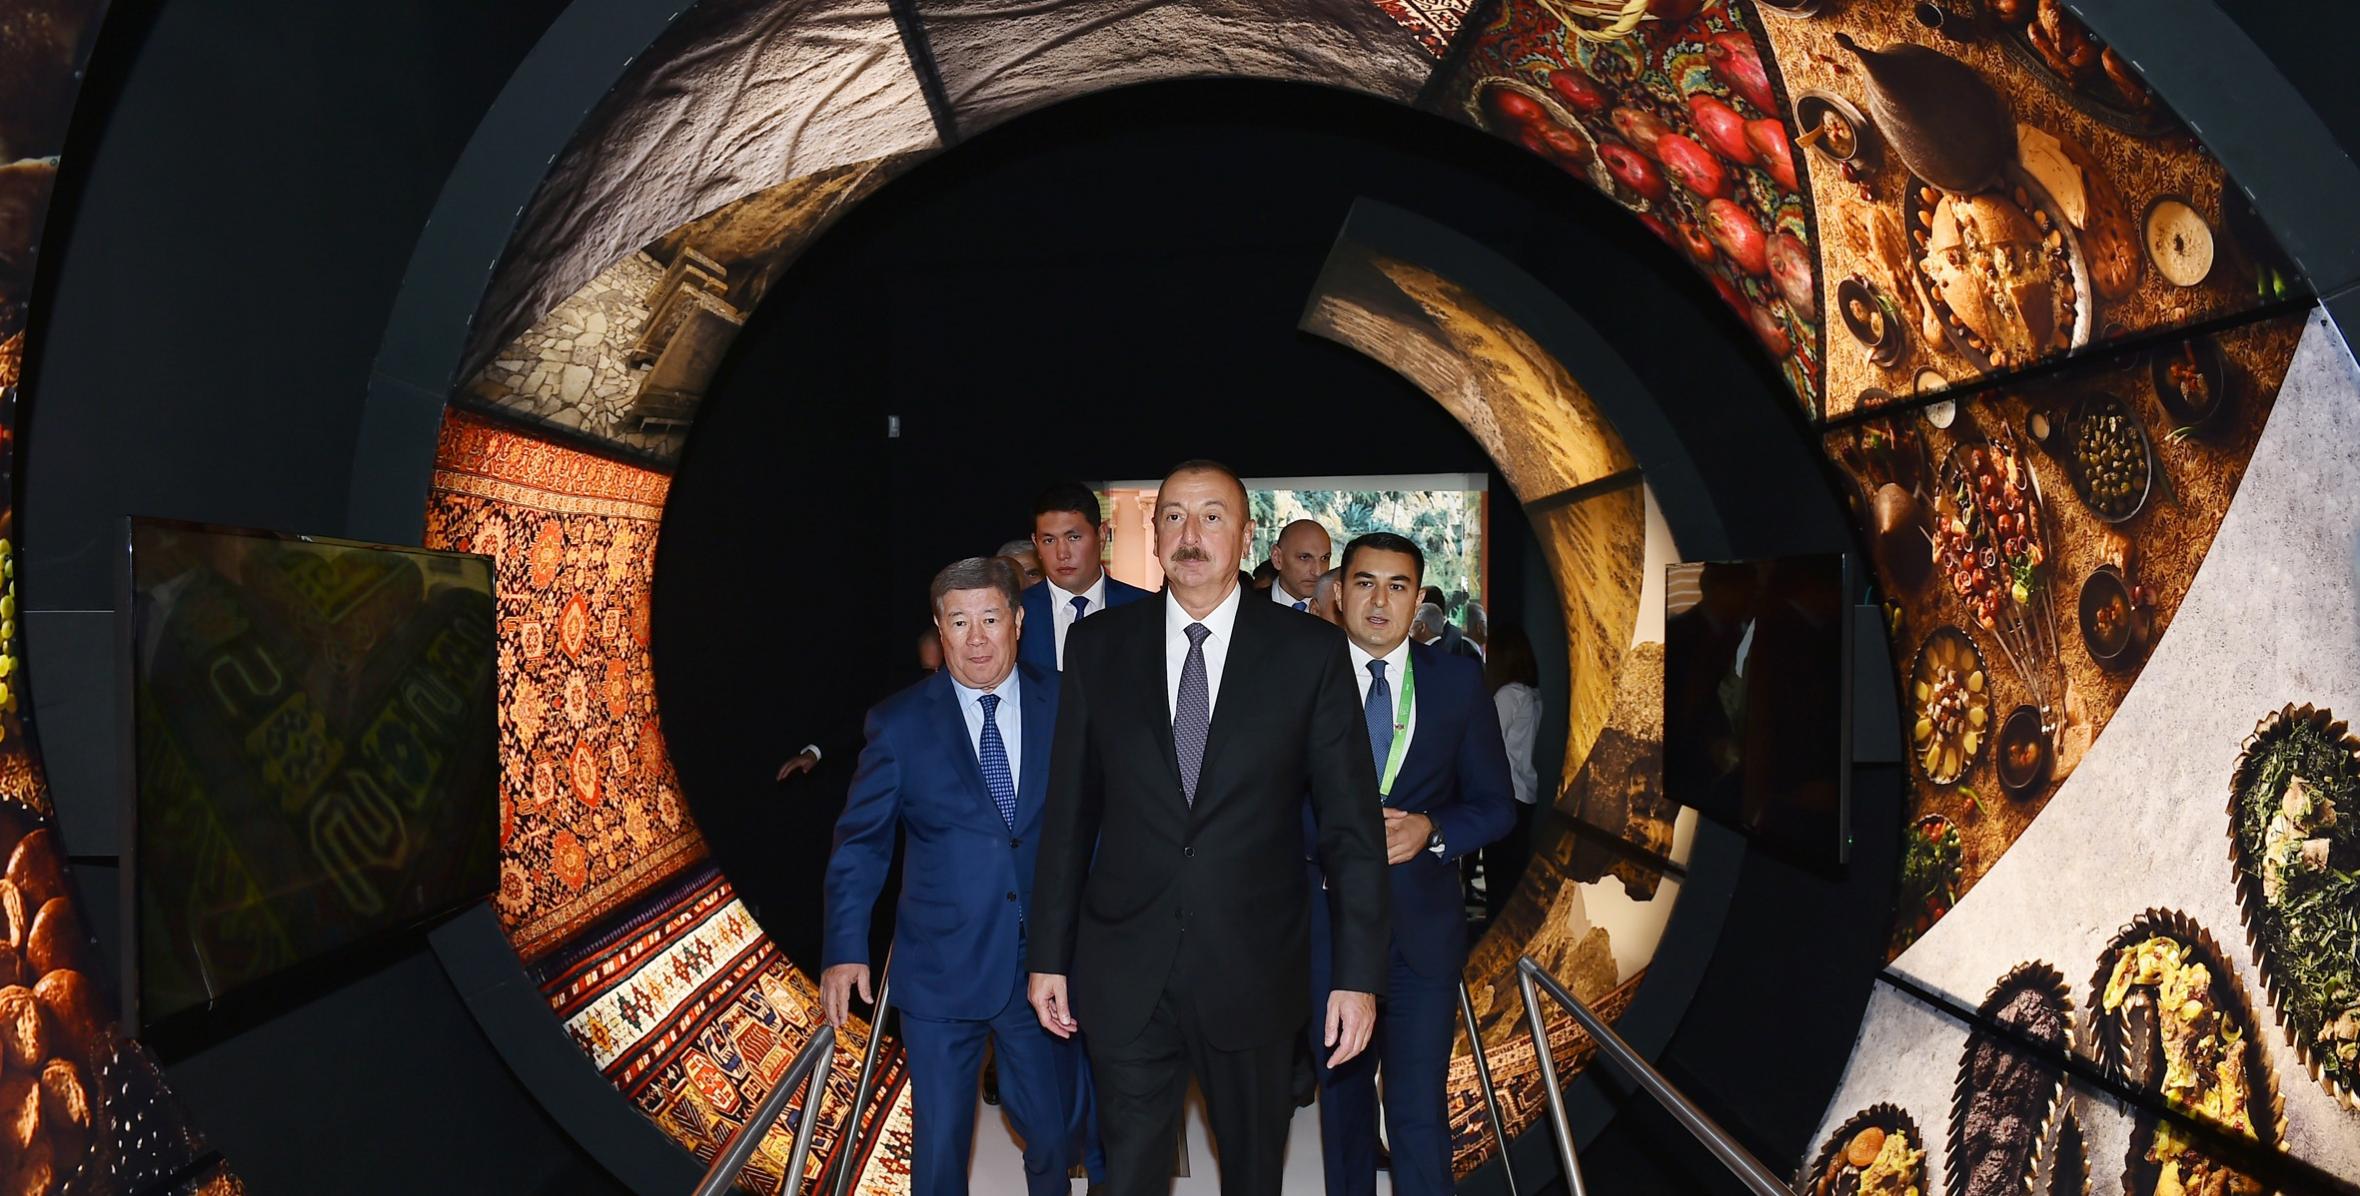 Ильхам Алиев ознакомился на международной выставке «ЕХРО 2017 Астана» с национальными павильонами Азербайджана и Казахстана